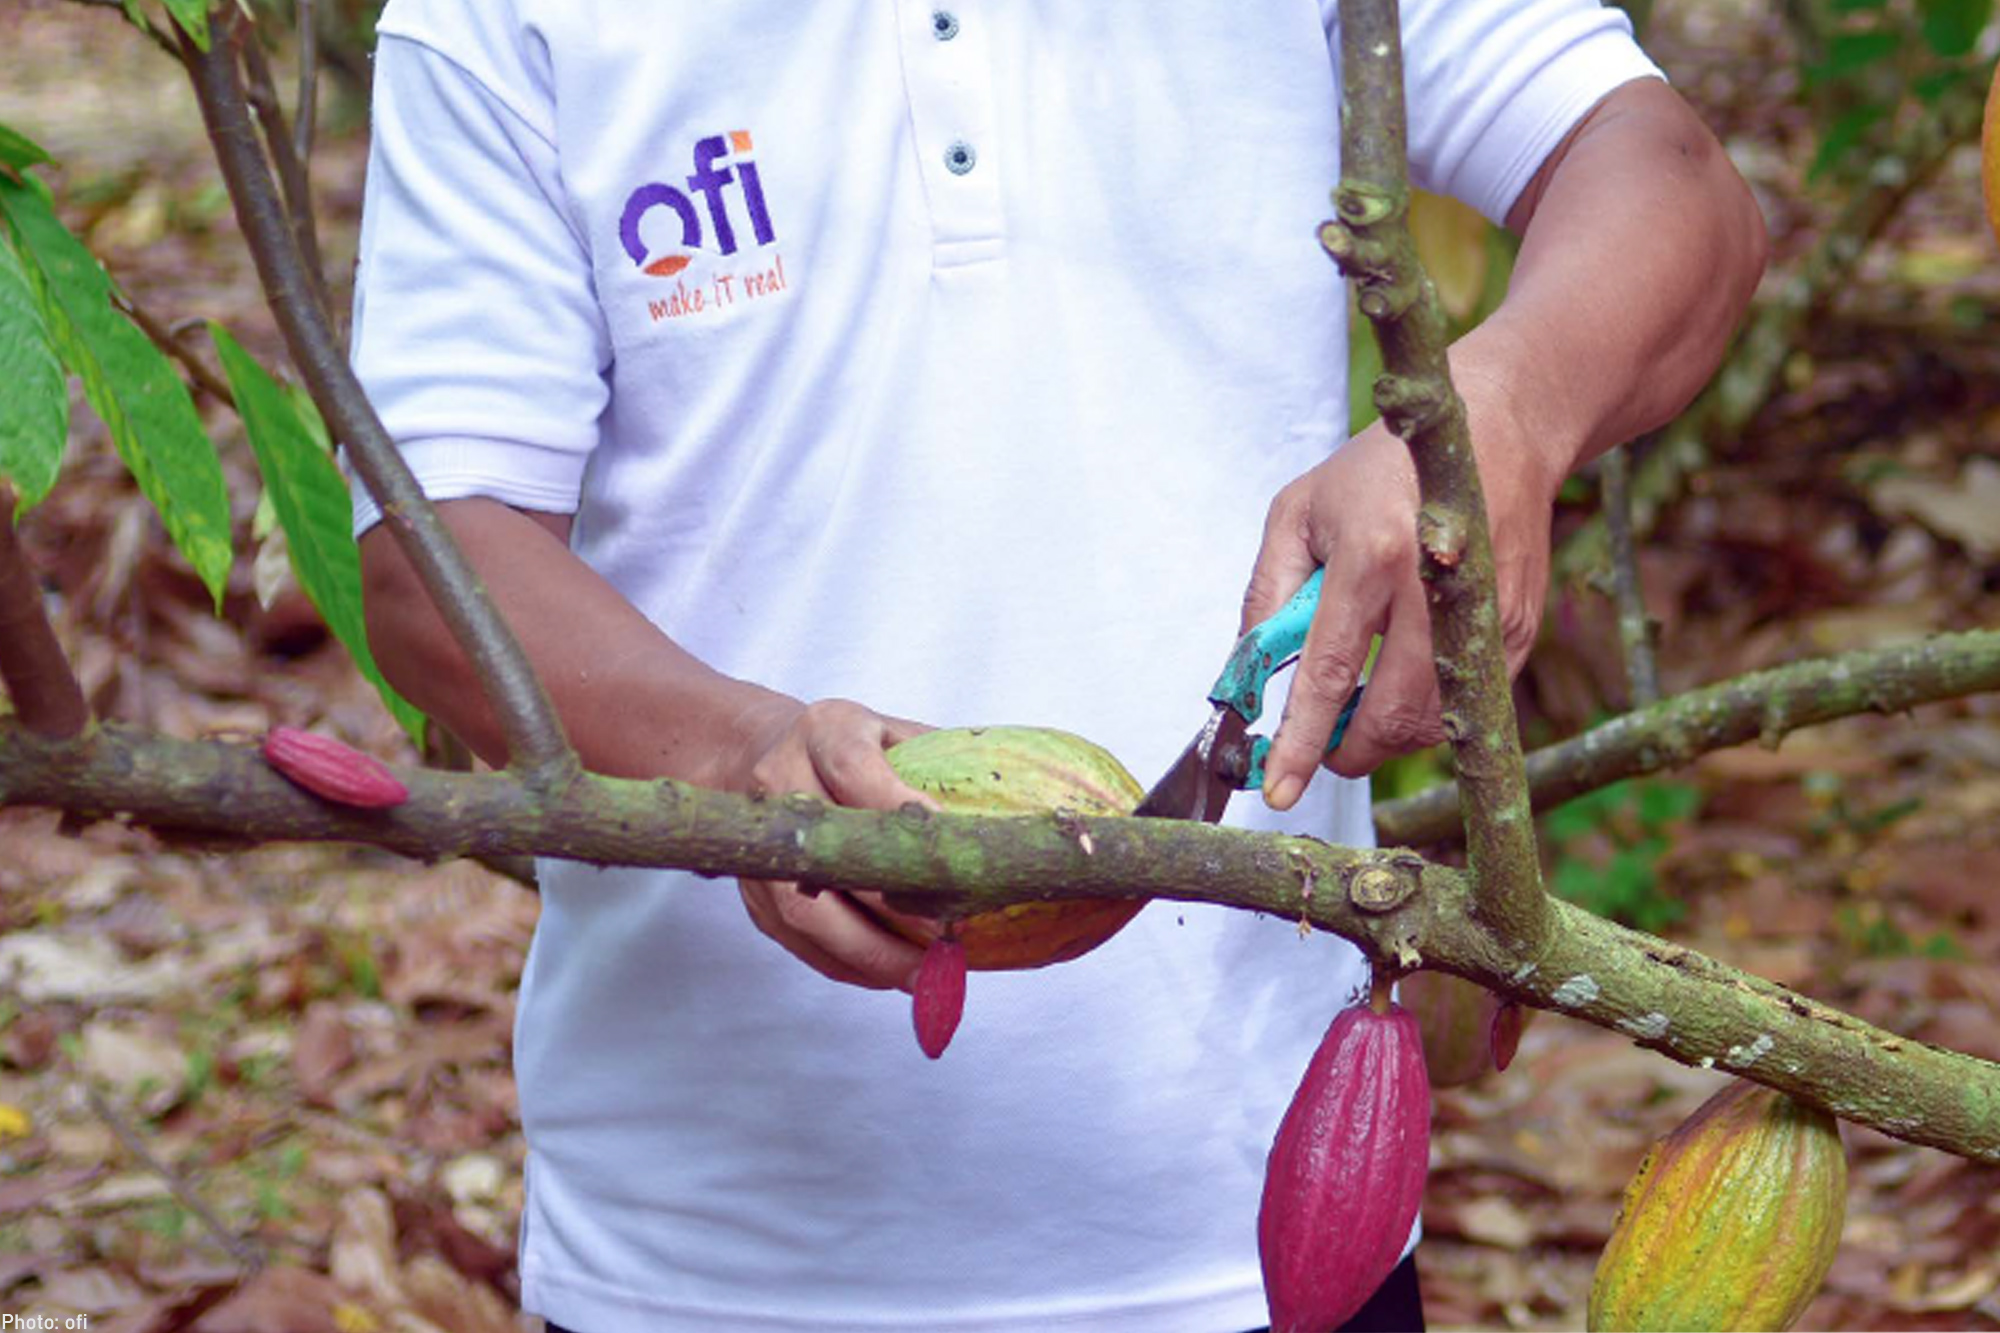 ofi Ambition to Create a Positive Cocoa Supply Chain Future through the Cocoa Compass Initiative